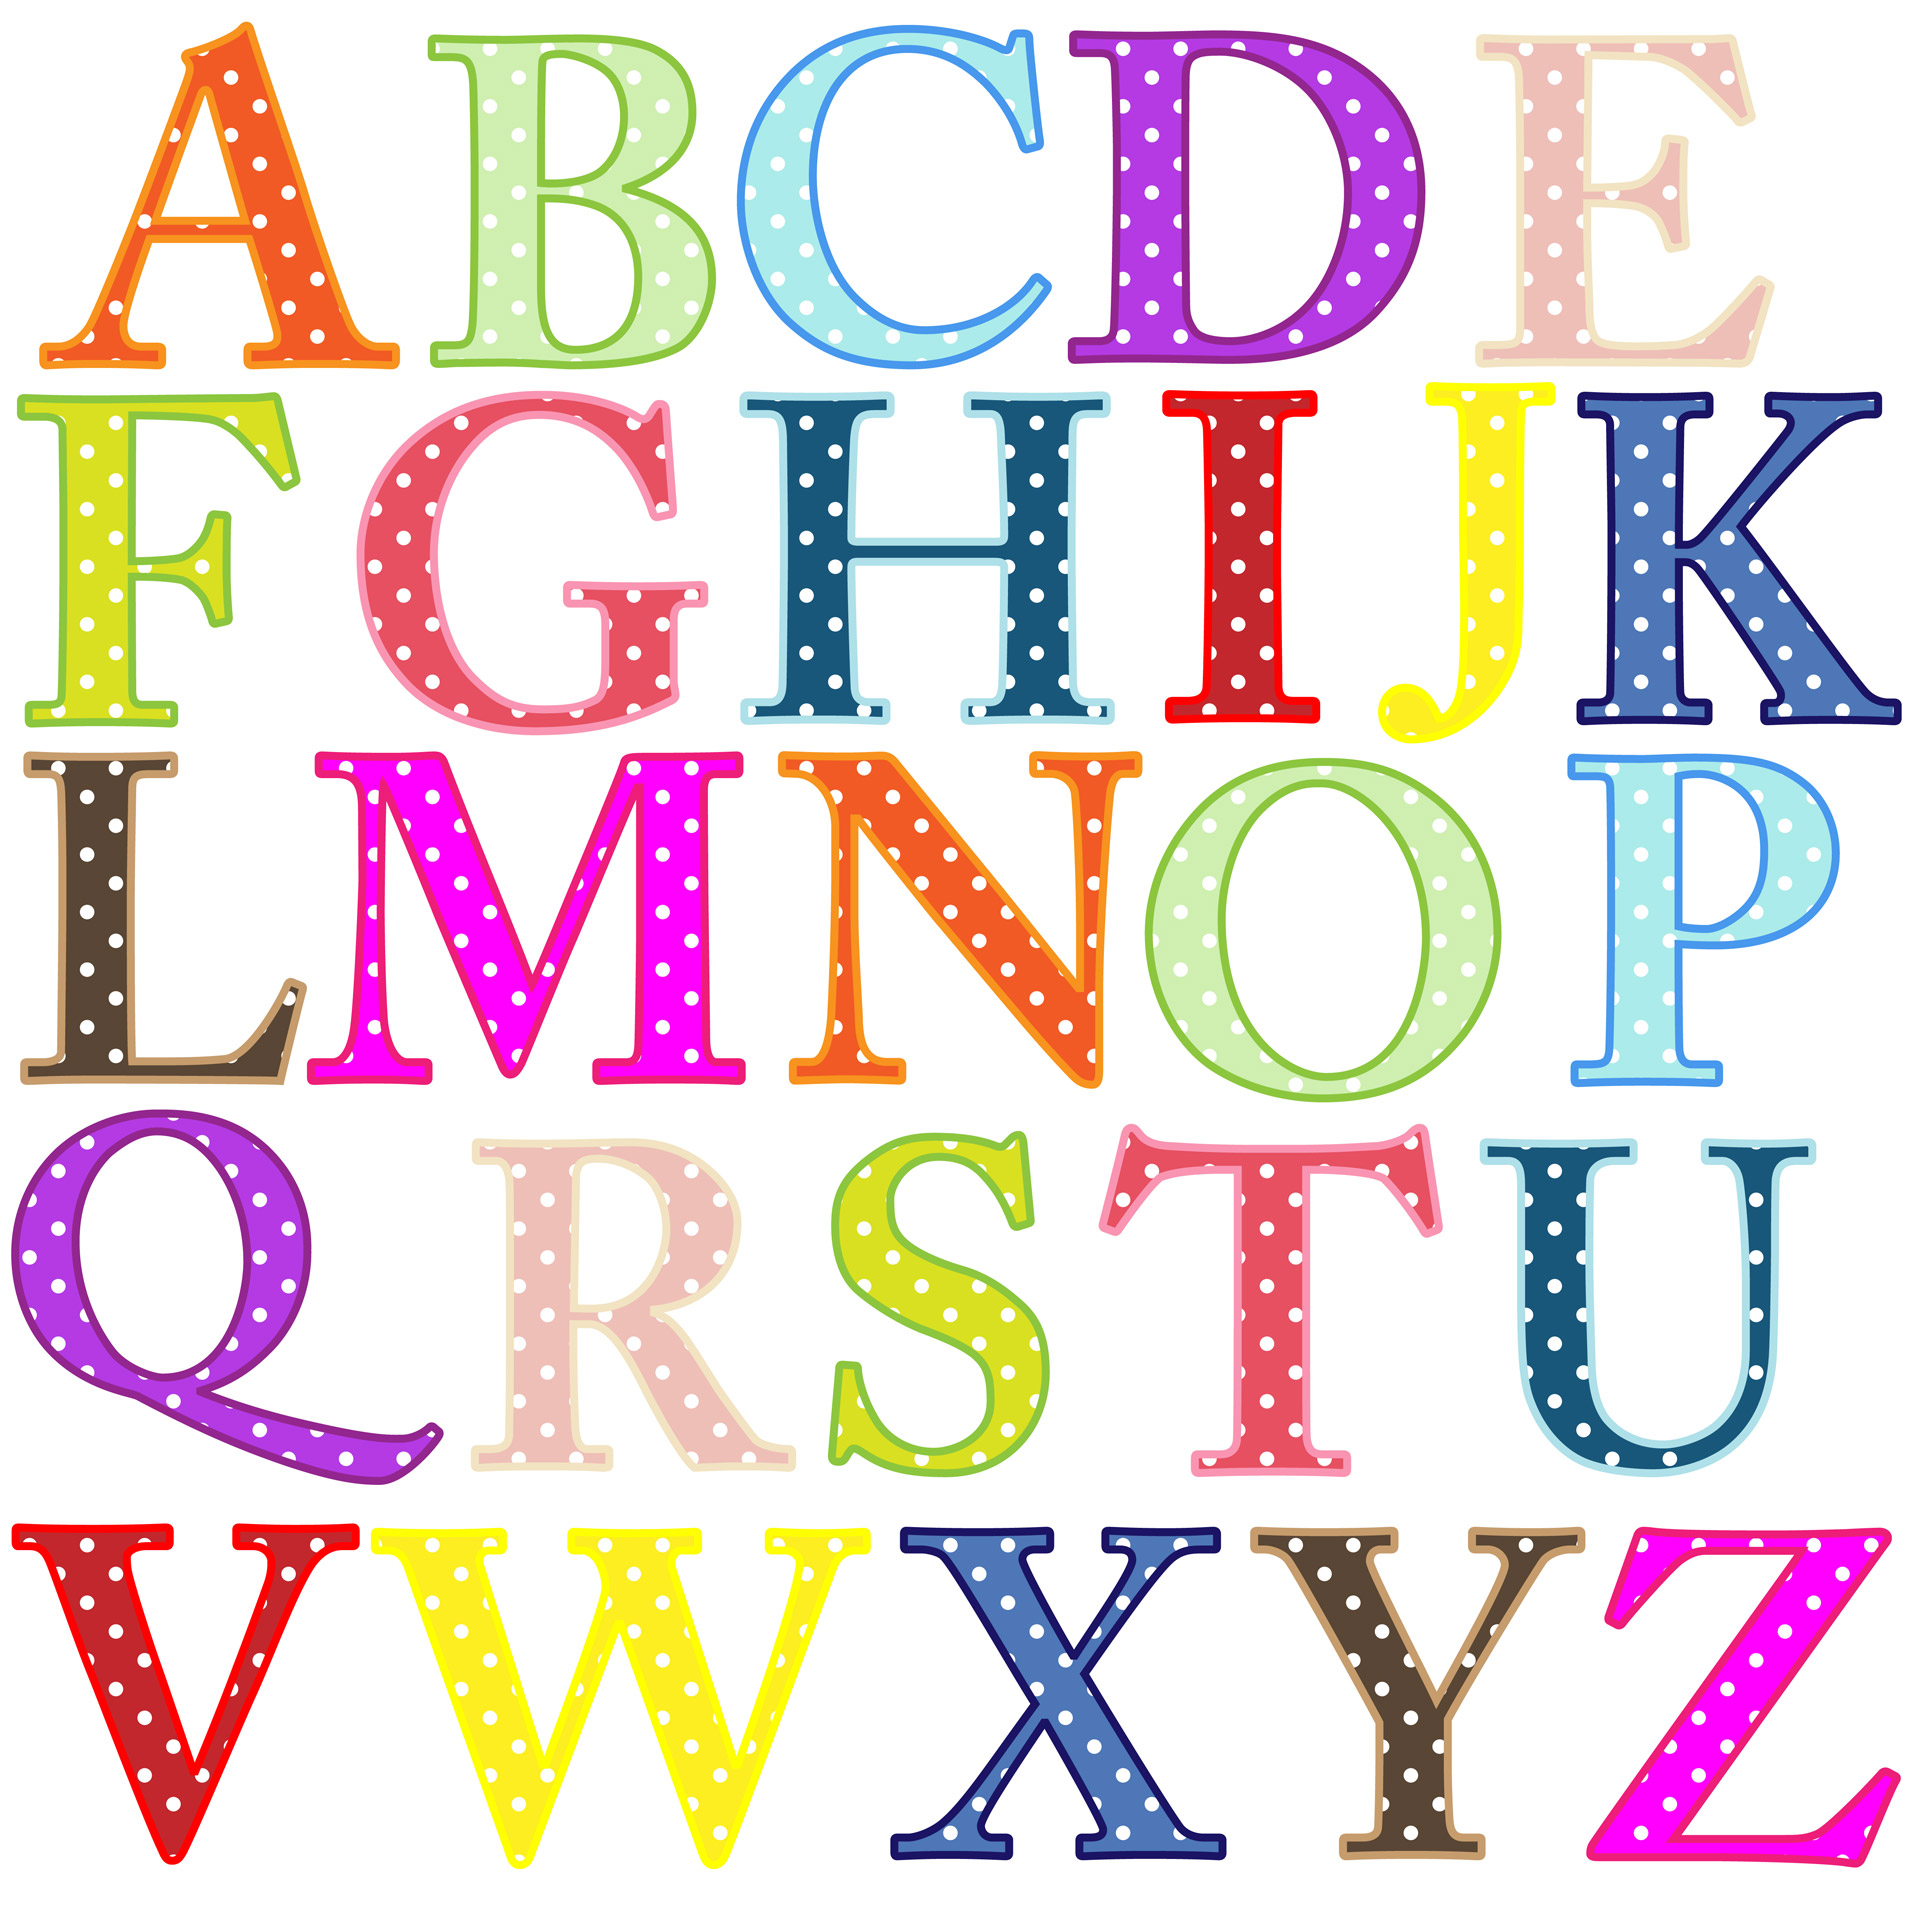 Alphabet Letters Clip Art Free Stock Photo Public Domain Pictures 3 Clipartix